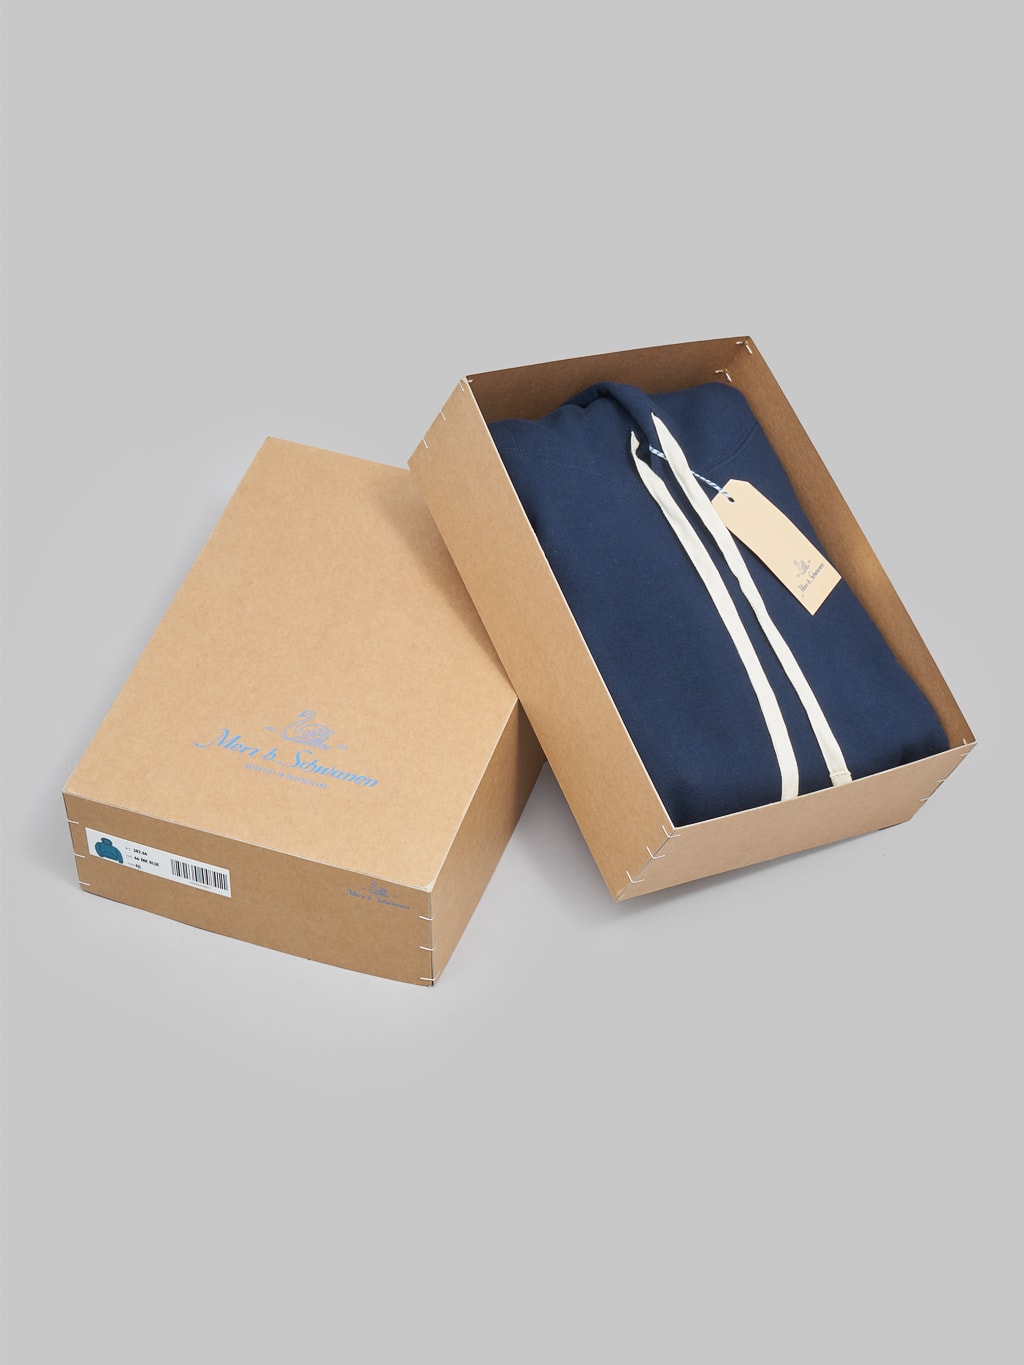 Merz b schwanen loopwheeled hoodie ink blue packaging box